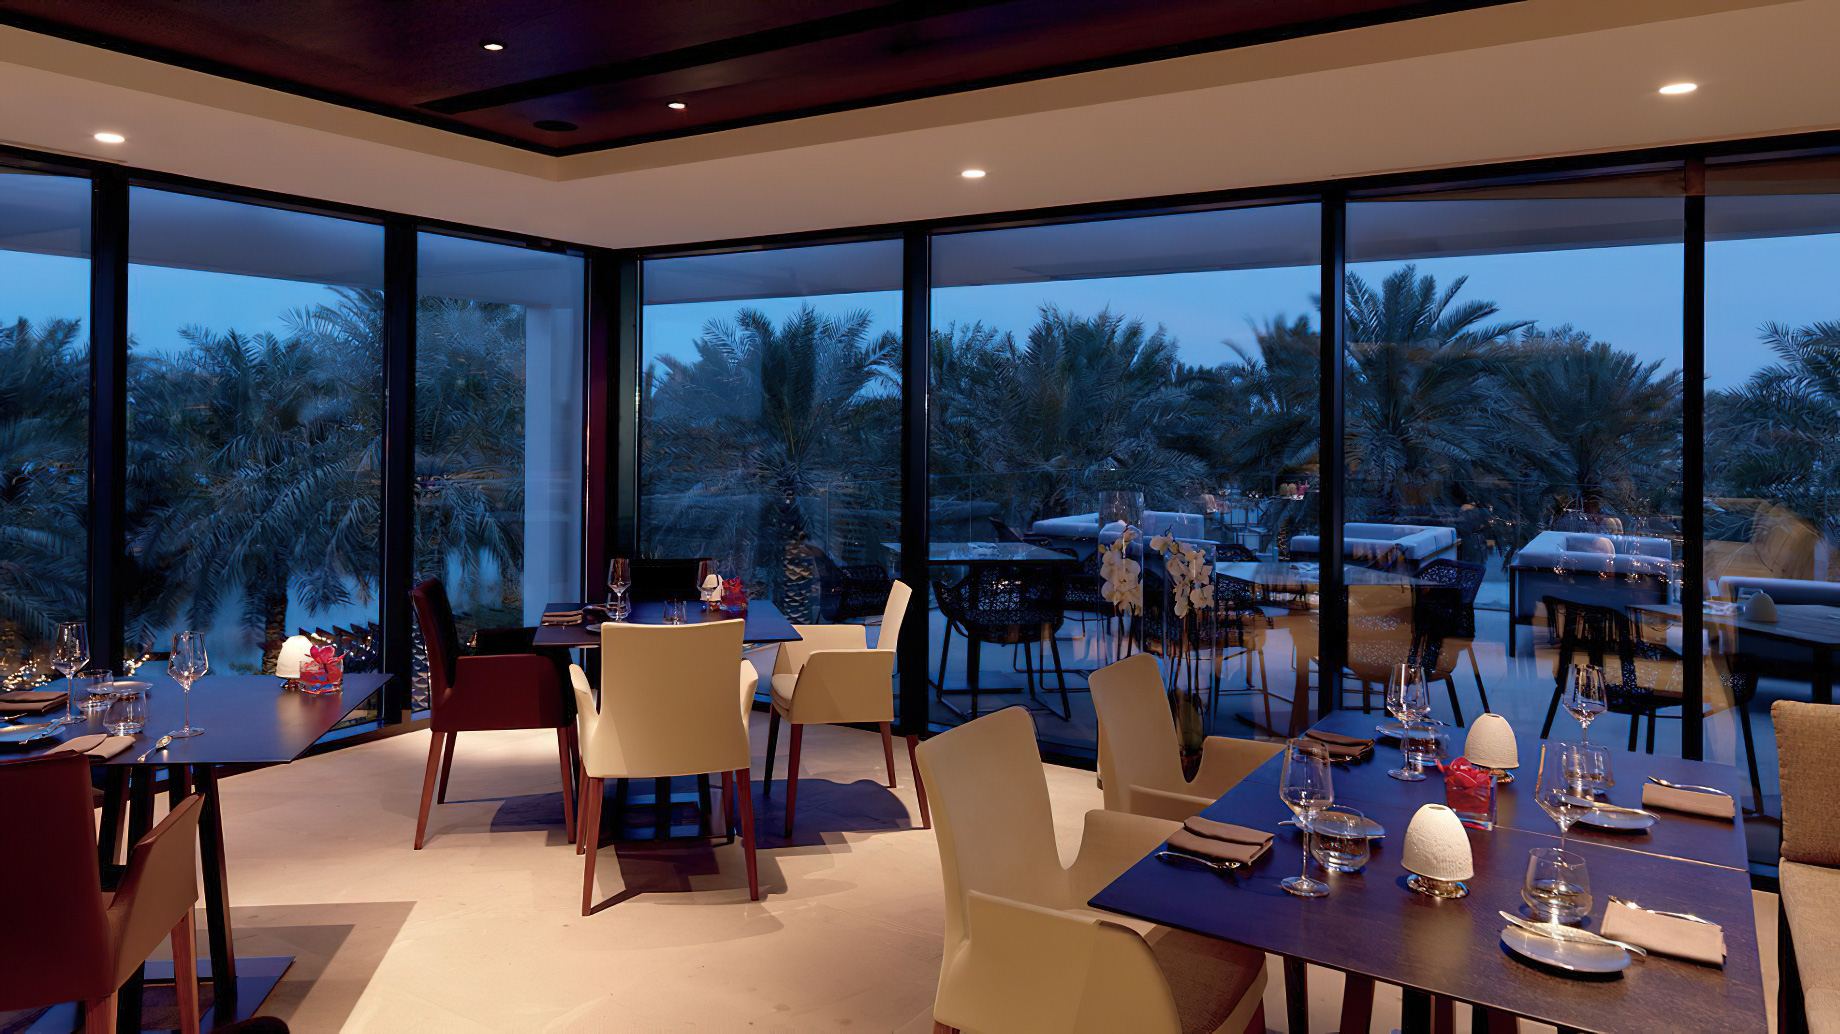 The Ritz-Carlton, Bahrain Resort Hotel – Manama, Bahrain – Primavera Restaurant Osteria Contemporanea Interior Evening Dining